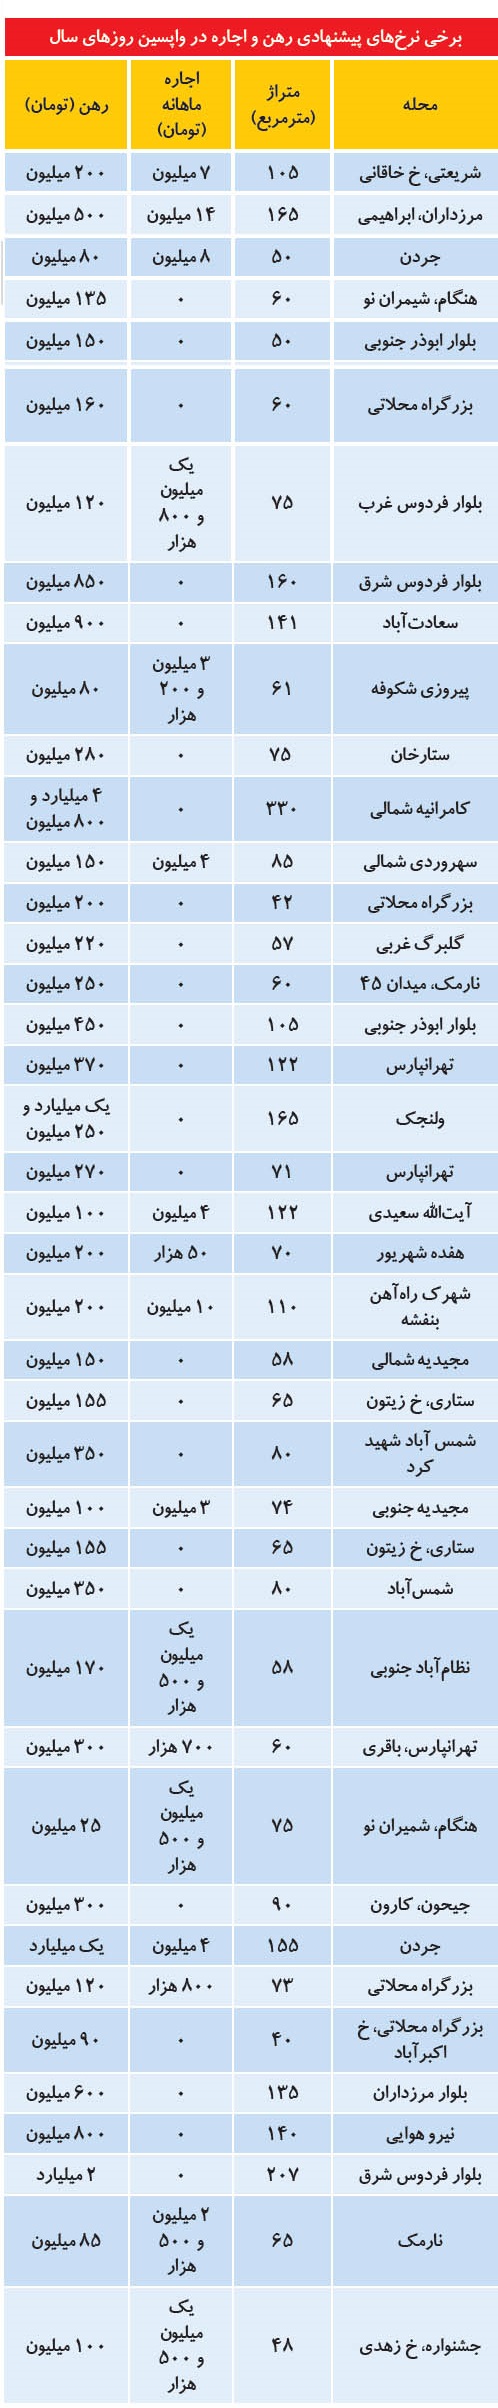 قیمت های عجیب و غریب رهن و اجاره در تهران + جدول